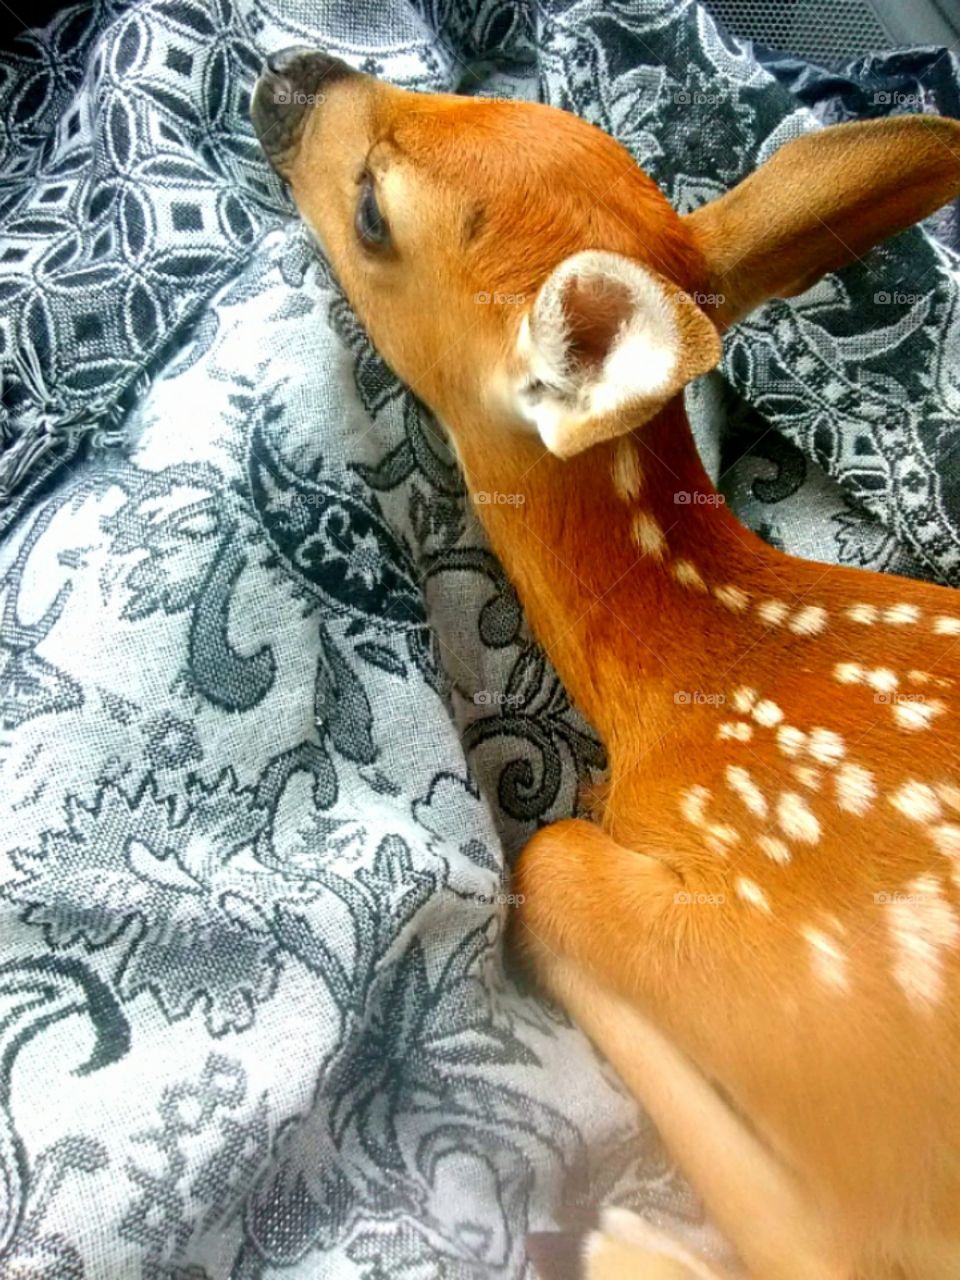 Rescued baby Deer